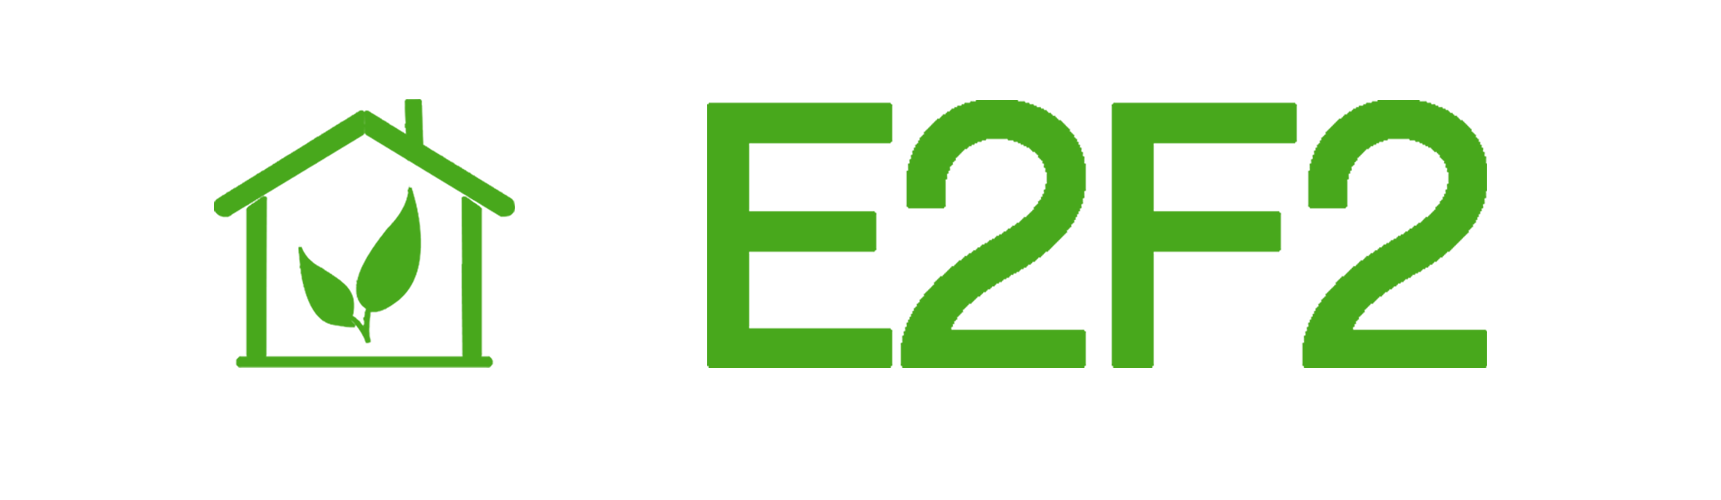 E2F2